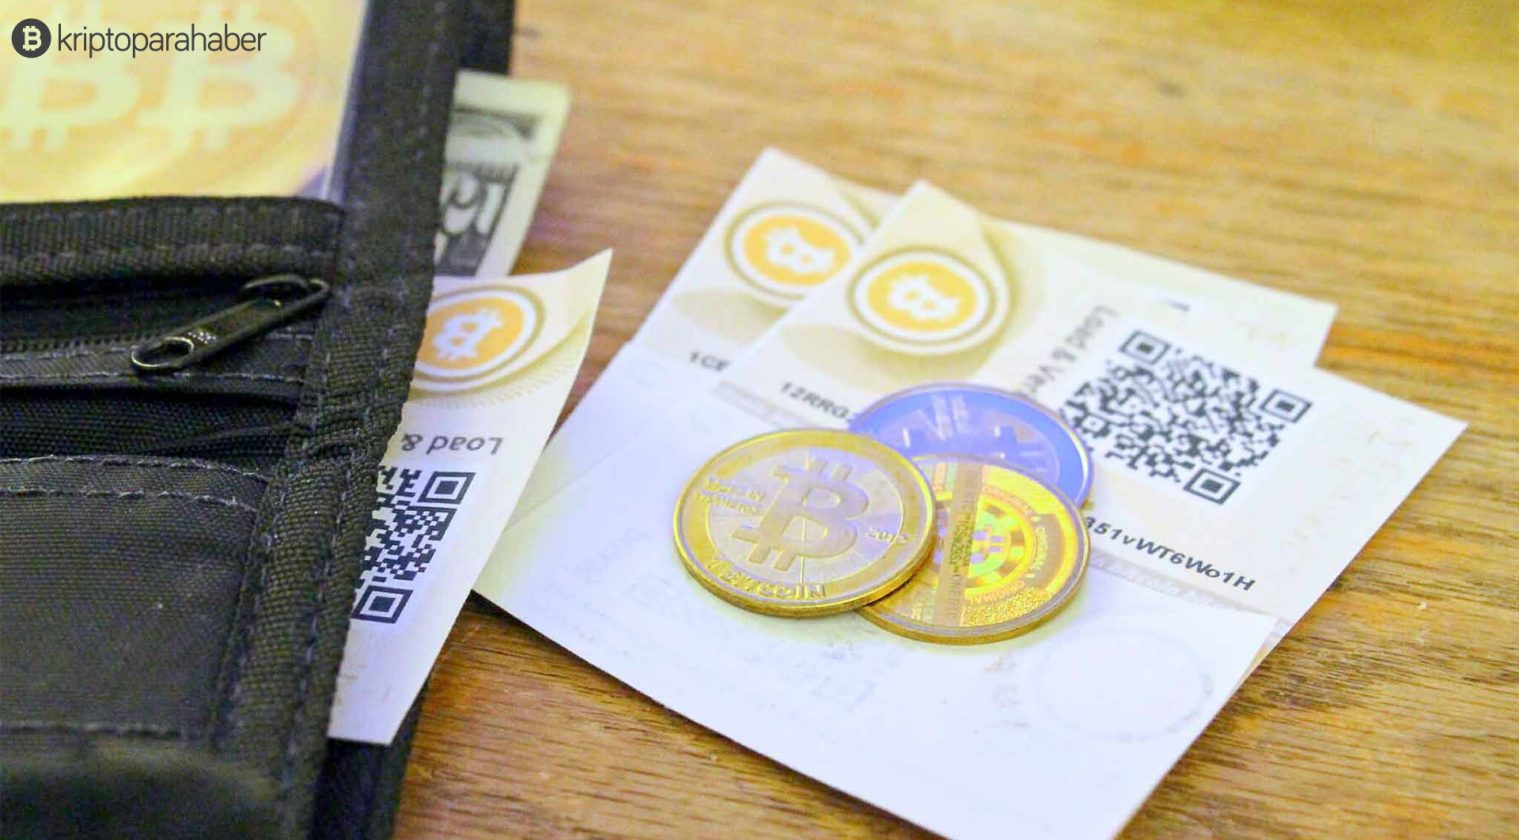 En az 1 Bitcoin tutan kaç cüzdan olduğu belirlendi.